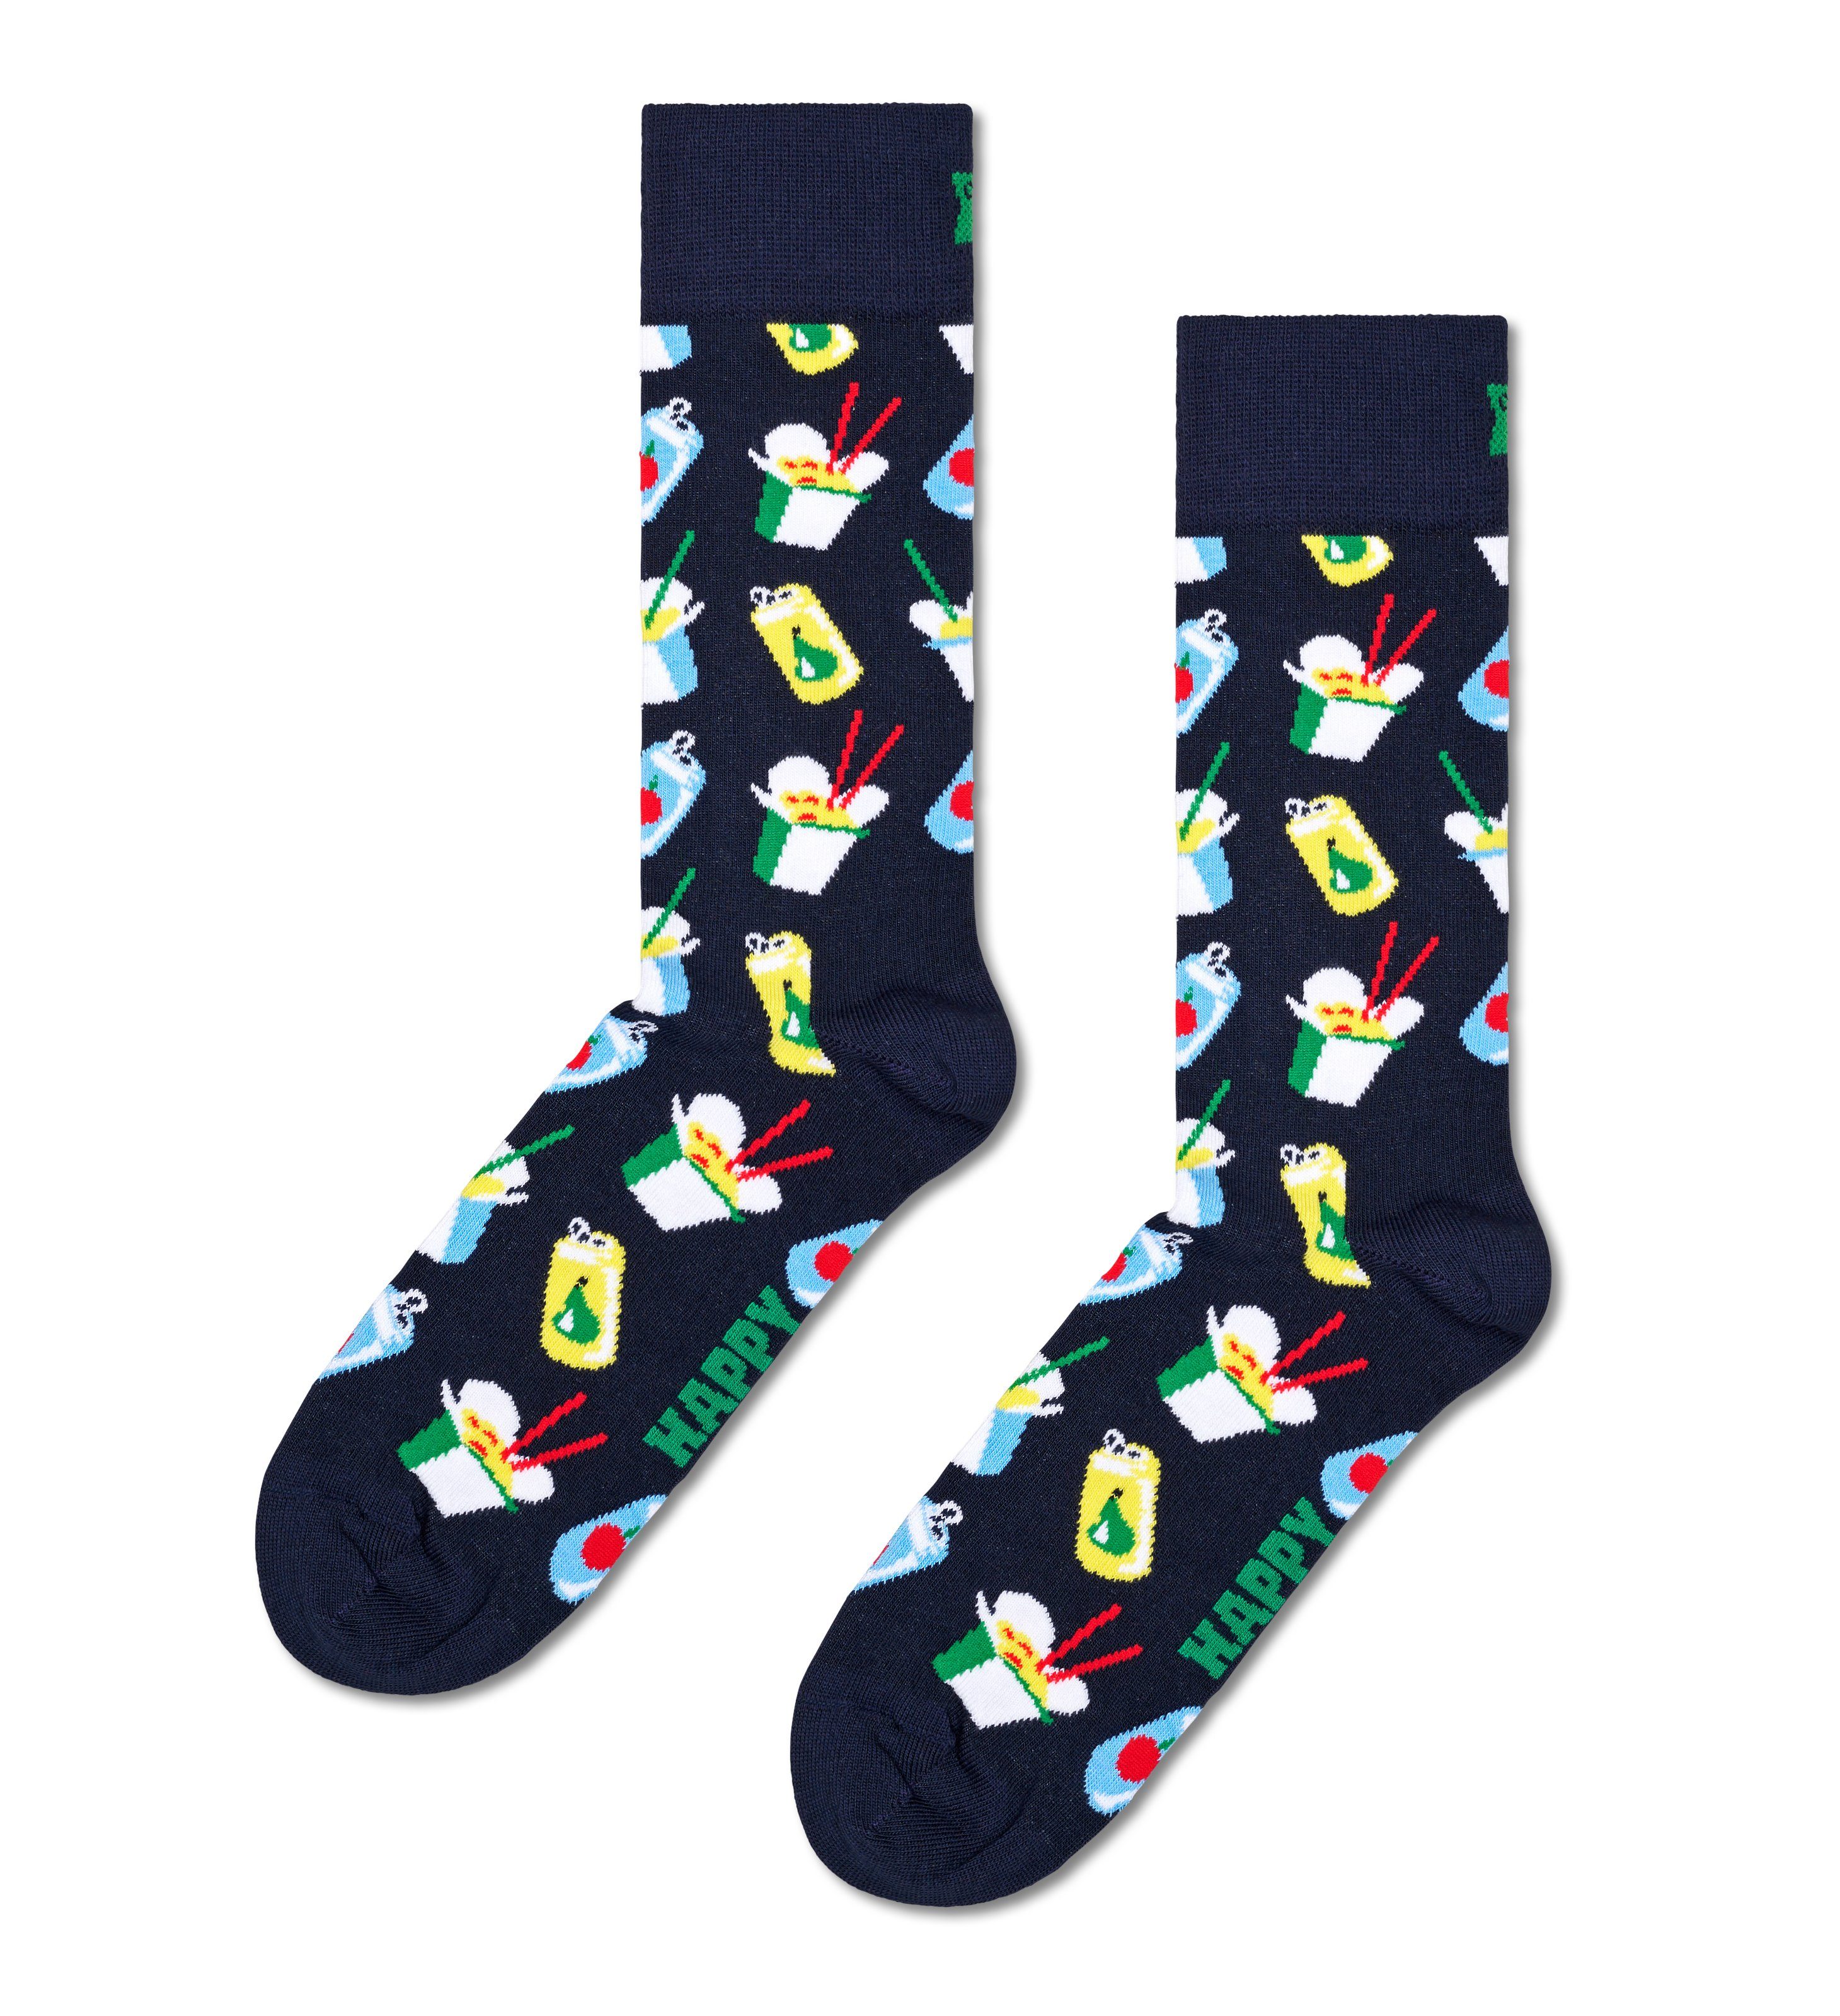 Happy Socks Sokken (4 paar)